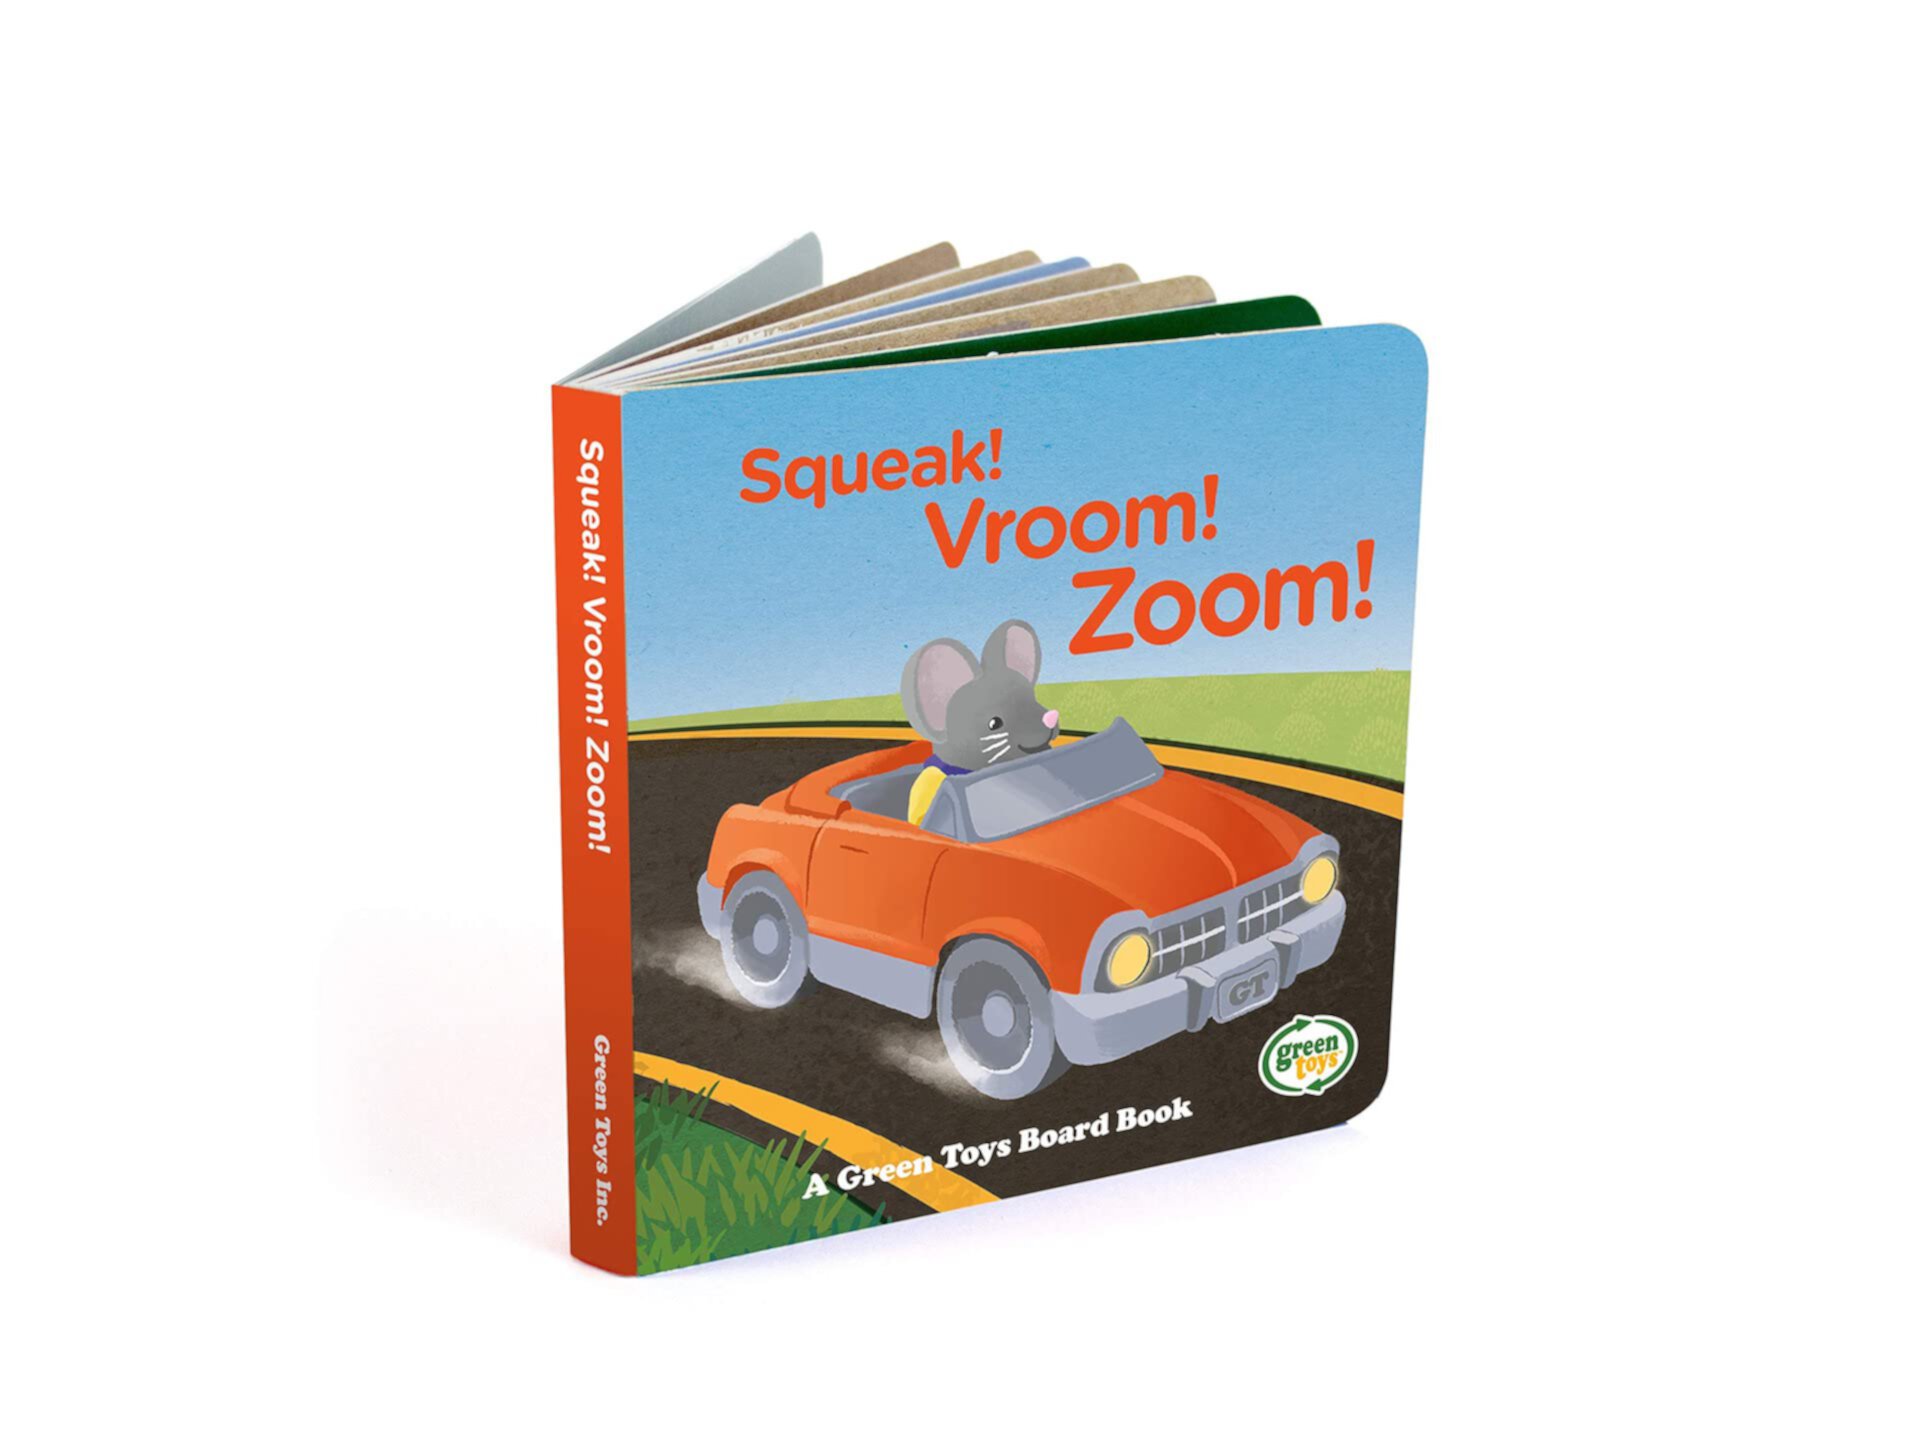 Green Toys Fire Truck & Sound Board Book - Ролевые игры, Двигательные навыки, Чтение, Детский игрушечный автомобиль. Не содержит BPA, фталатов, ПВХ. Можно мыть в посудомоечной машине, переработанный пластик, сделано в США. Green Toys